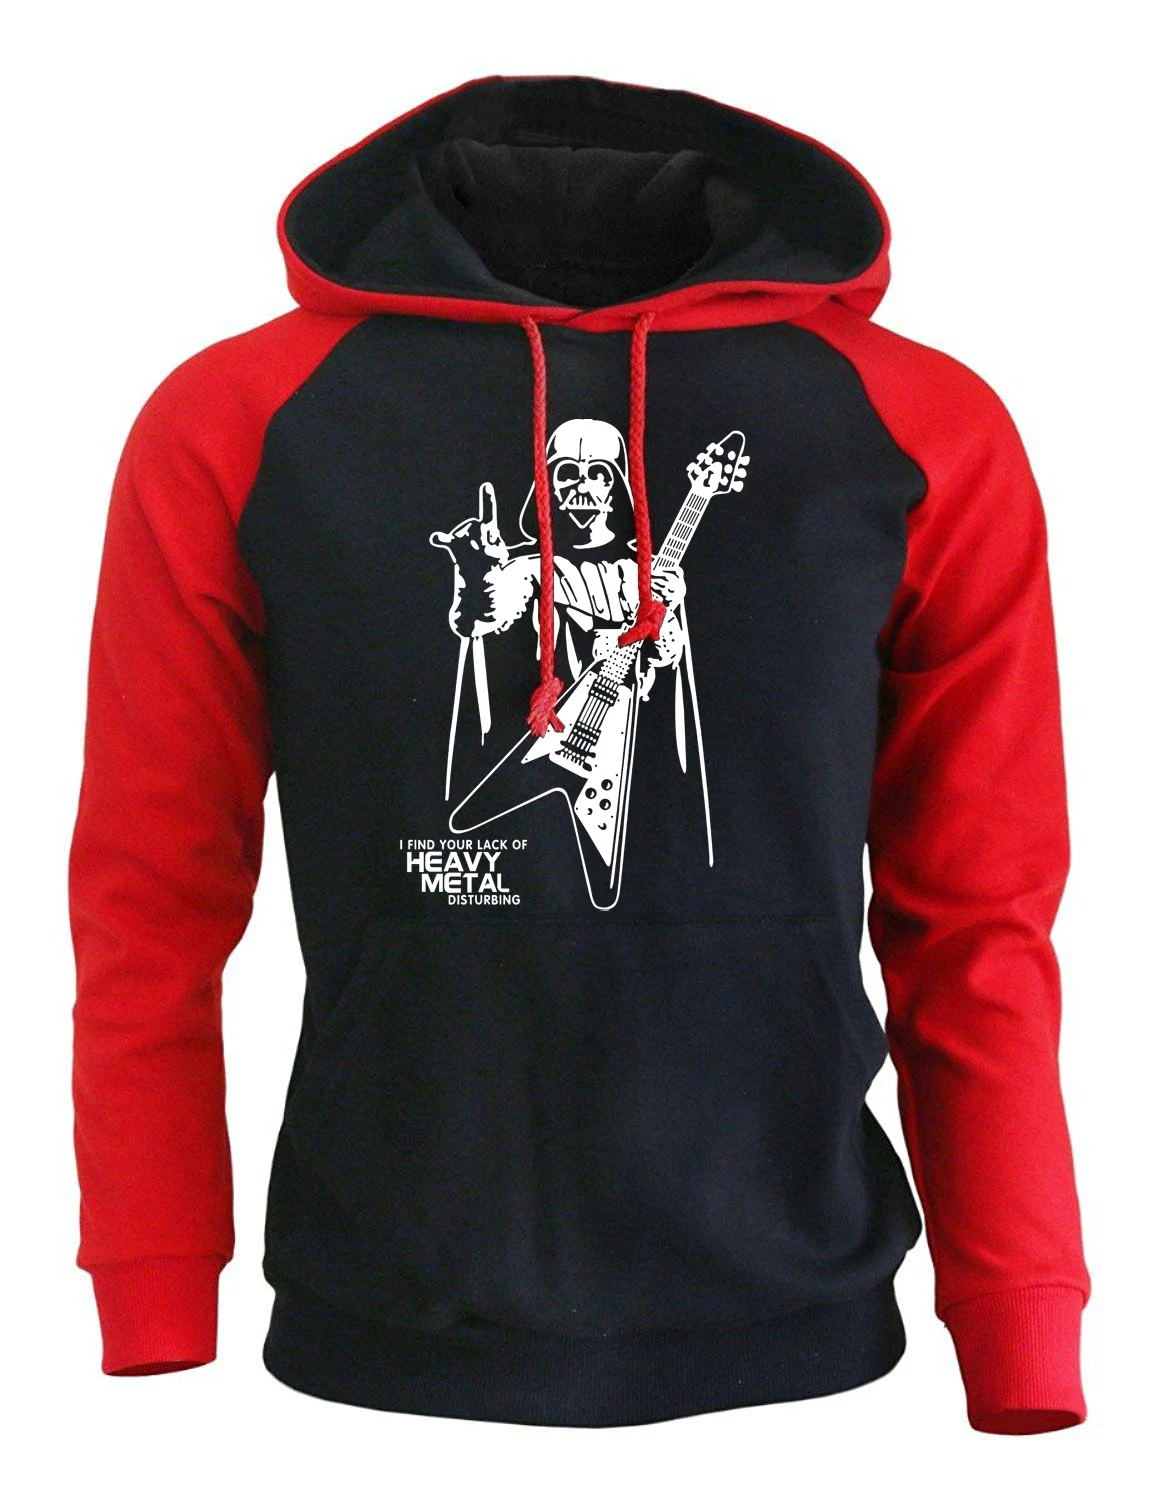 Дарт Вейдер тяжелый металл панк Толстовка для мужчин осень зима флис брендовая одежда с капюшоном мужская спортивная одежда Harajuku толстовки